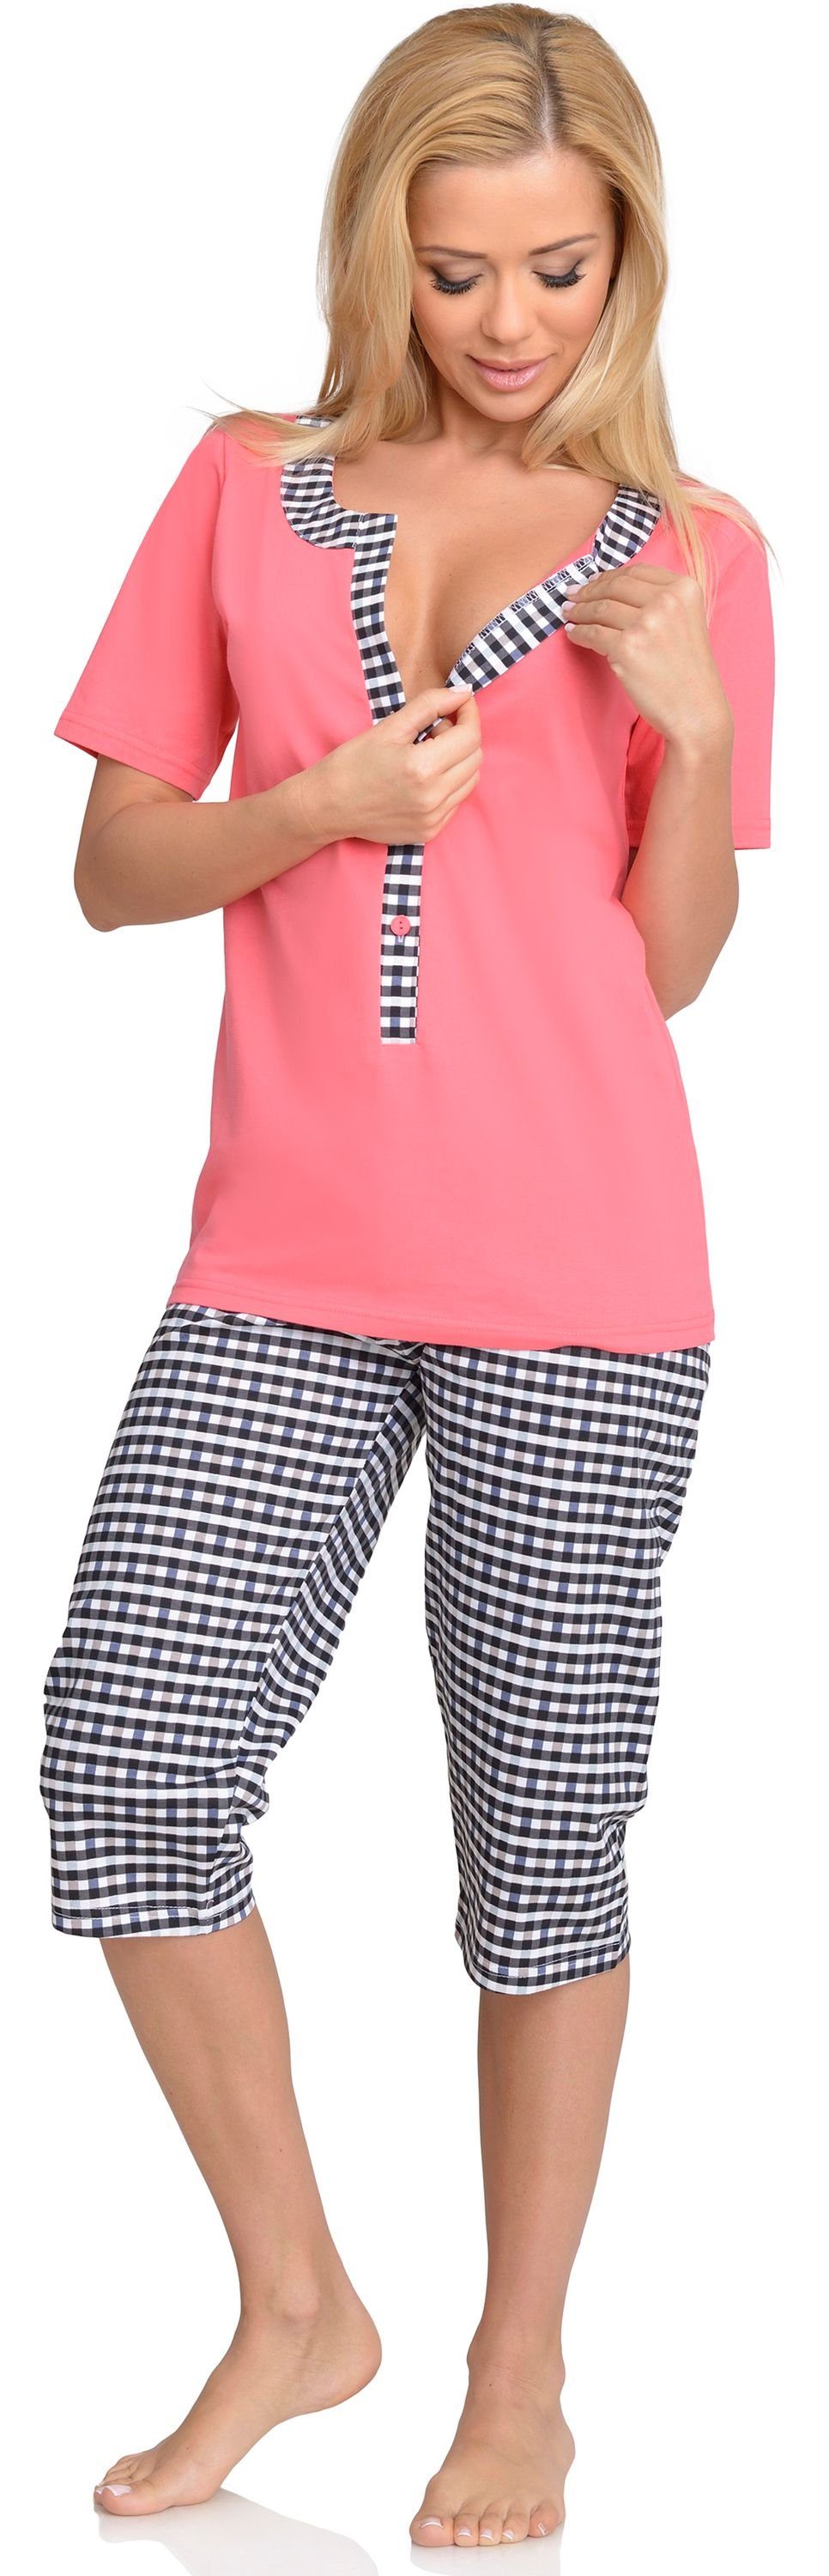 Be Mammy Umstandspyjama Damen Schlafanzug Coral-1 Stillpyjama H2L2N2